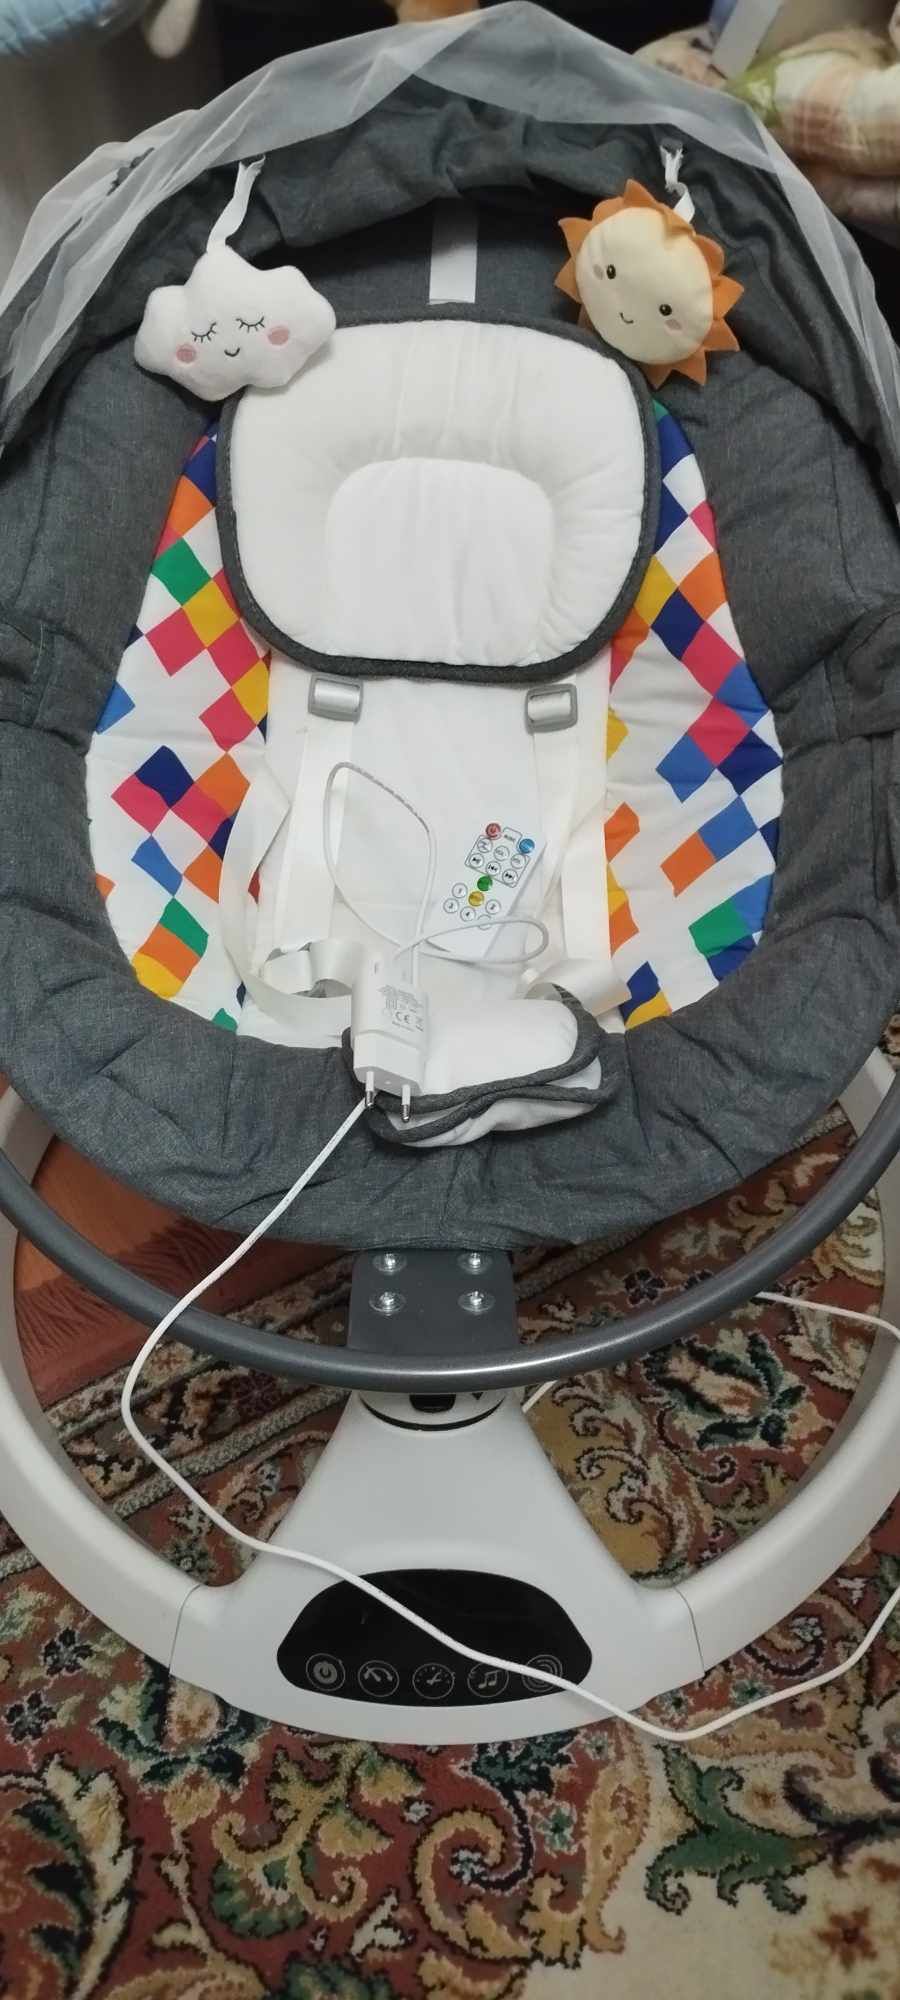 Електрическа люлка за бебе